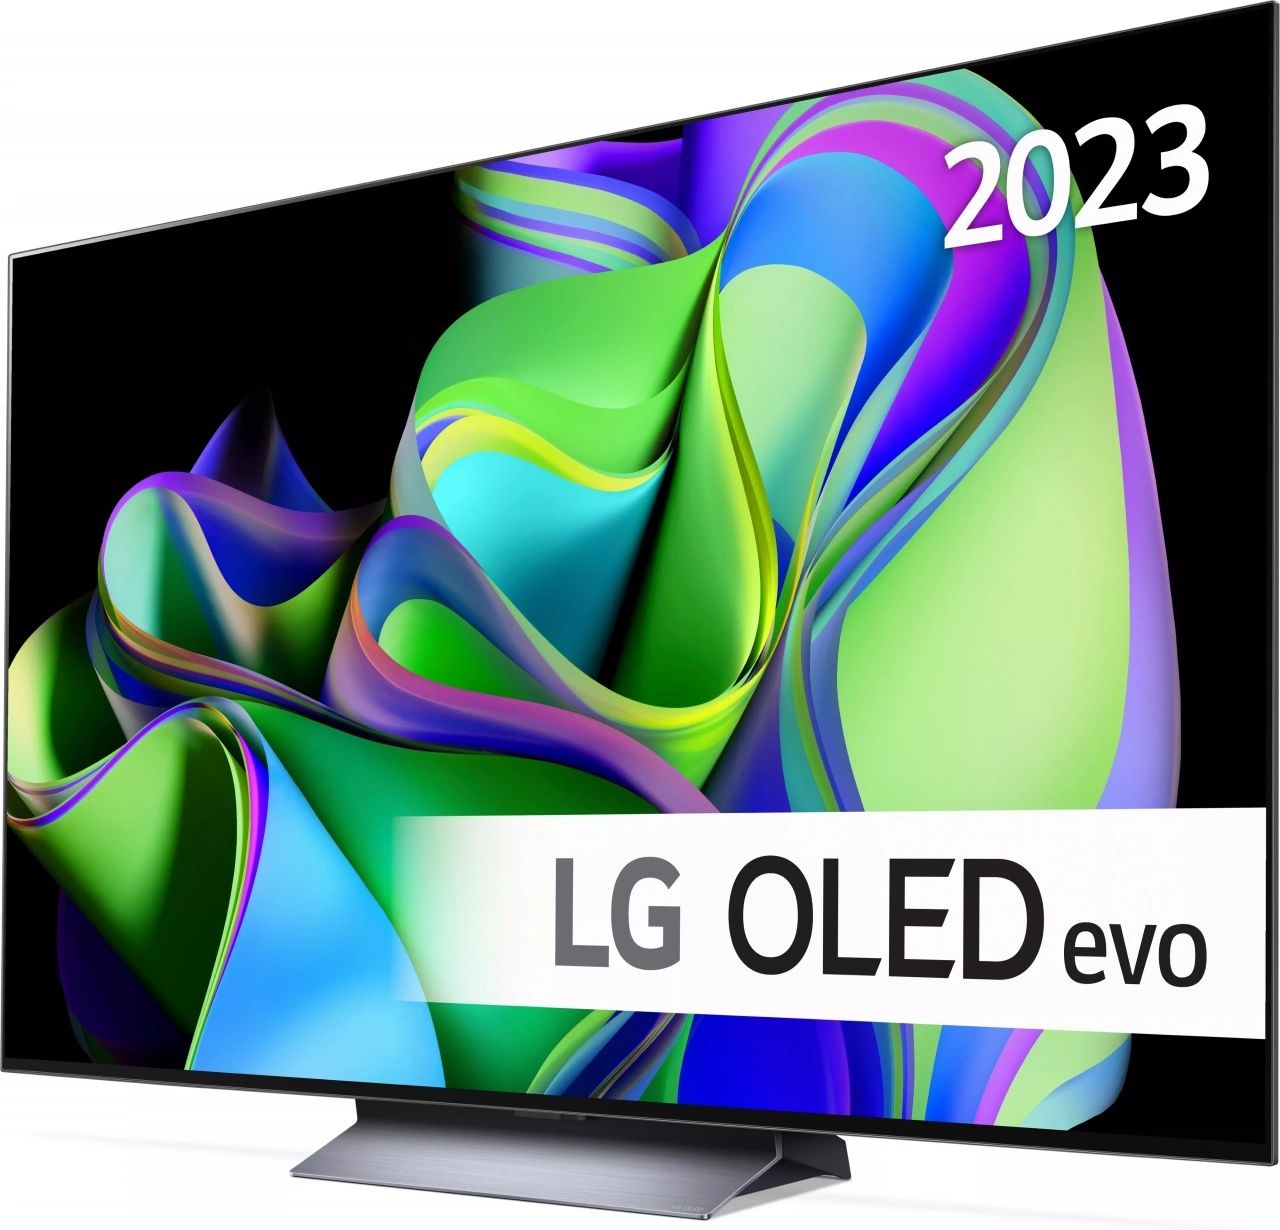 Tелевизор LG OLED 55/ 65/ 55C3 4K Ultra HD Smart HDR Новинка (2023)